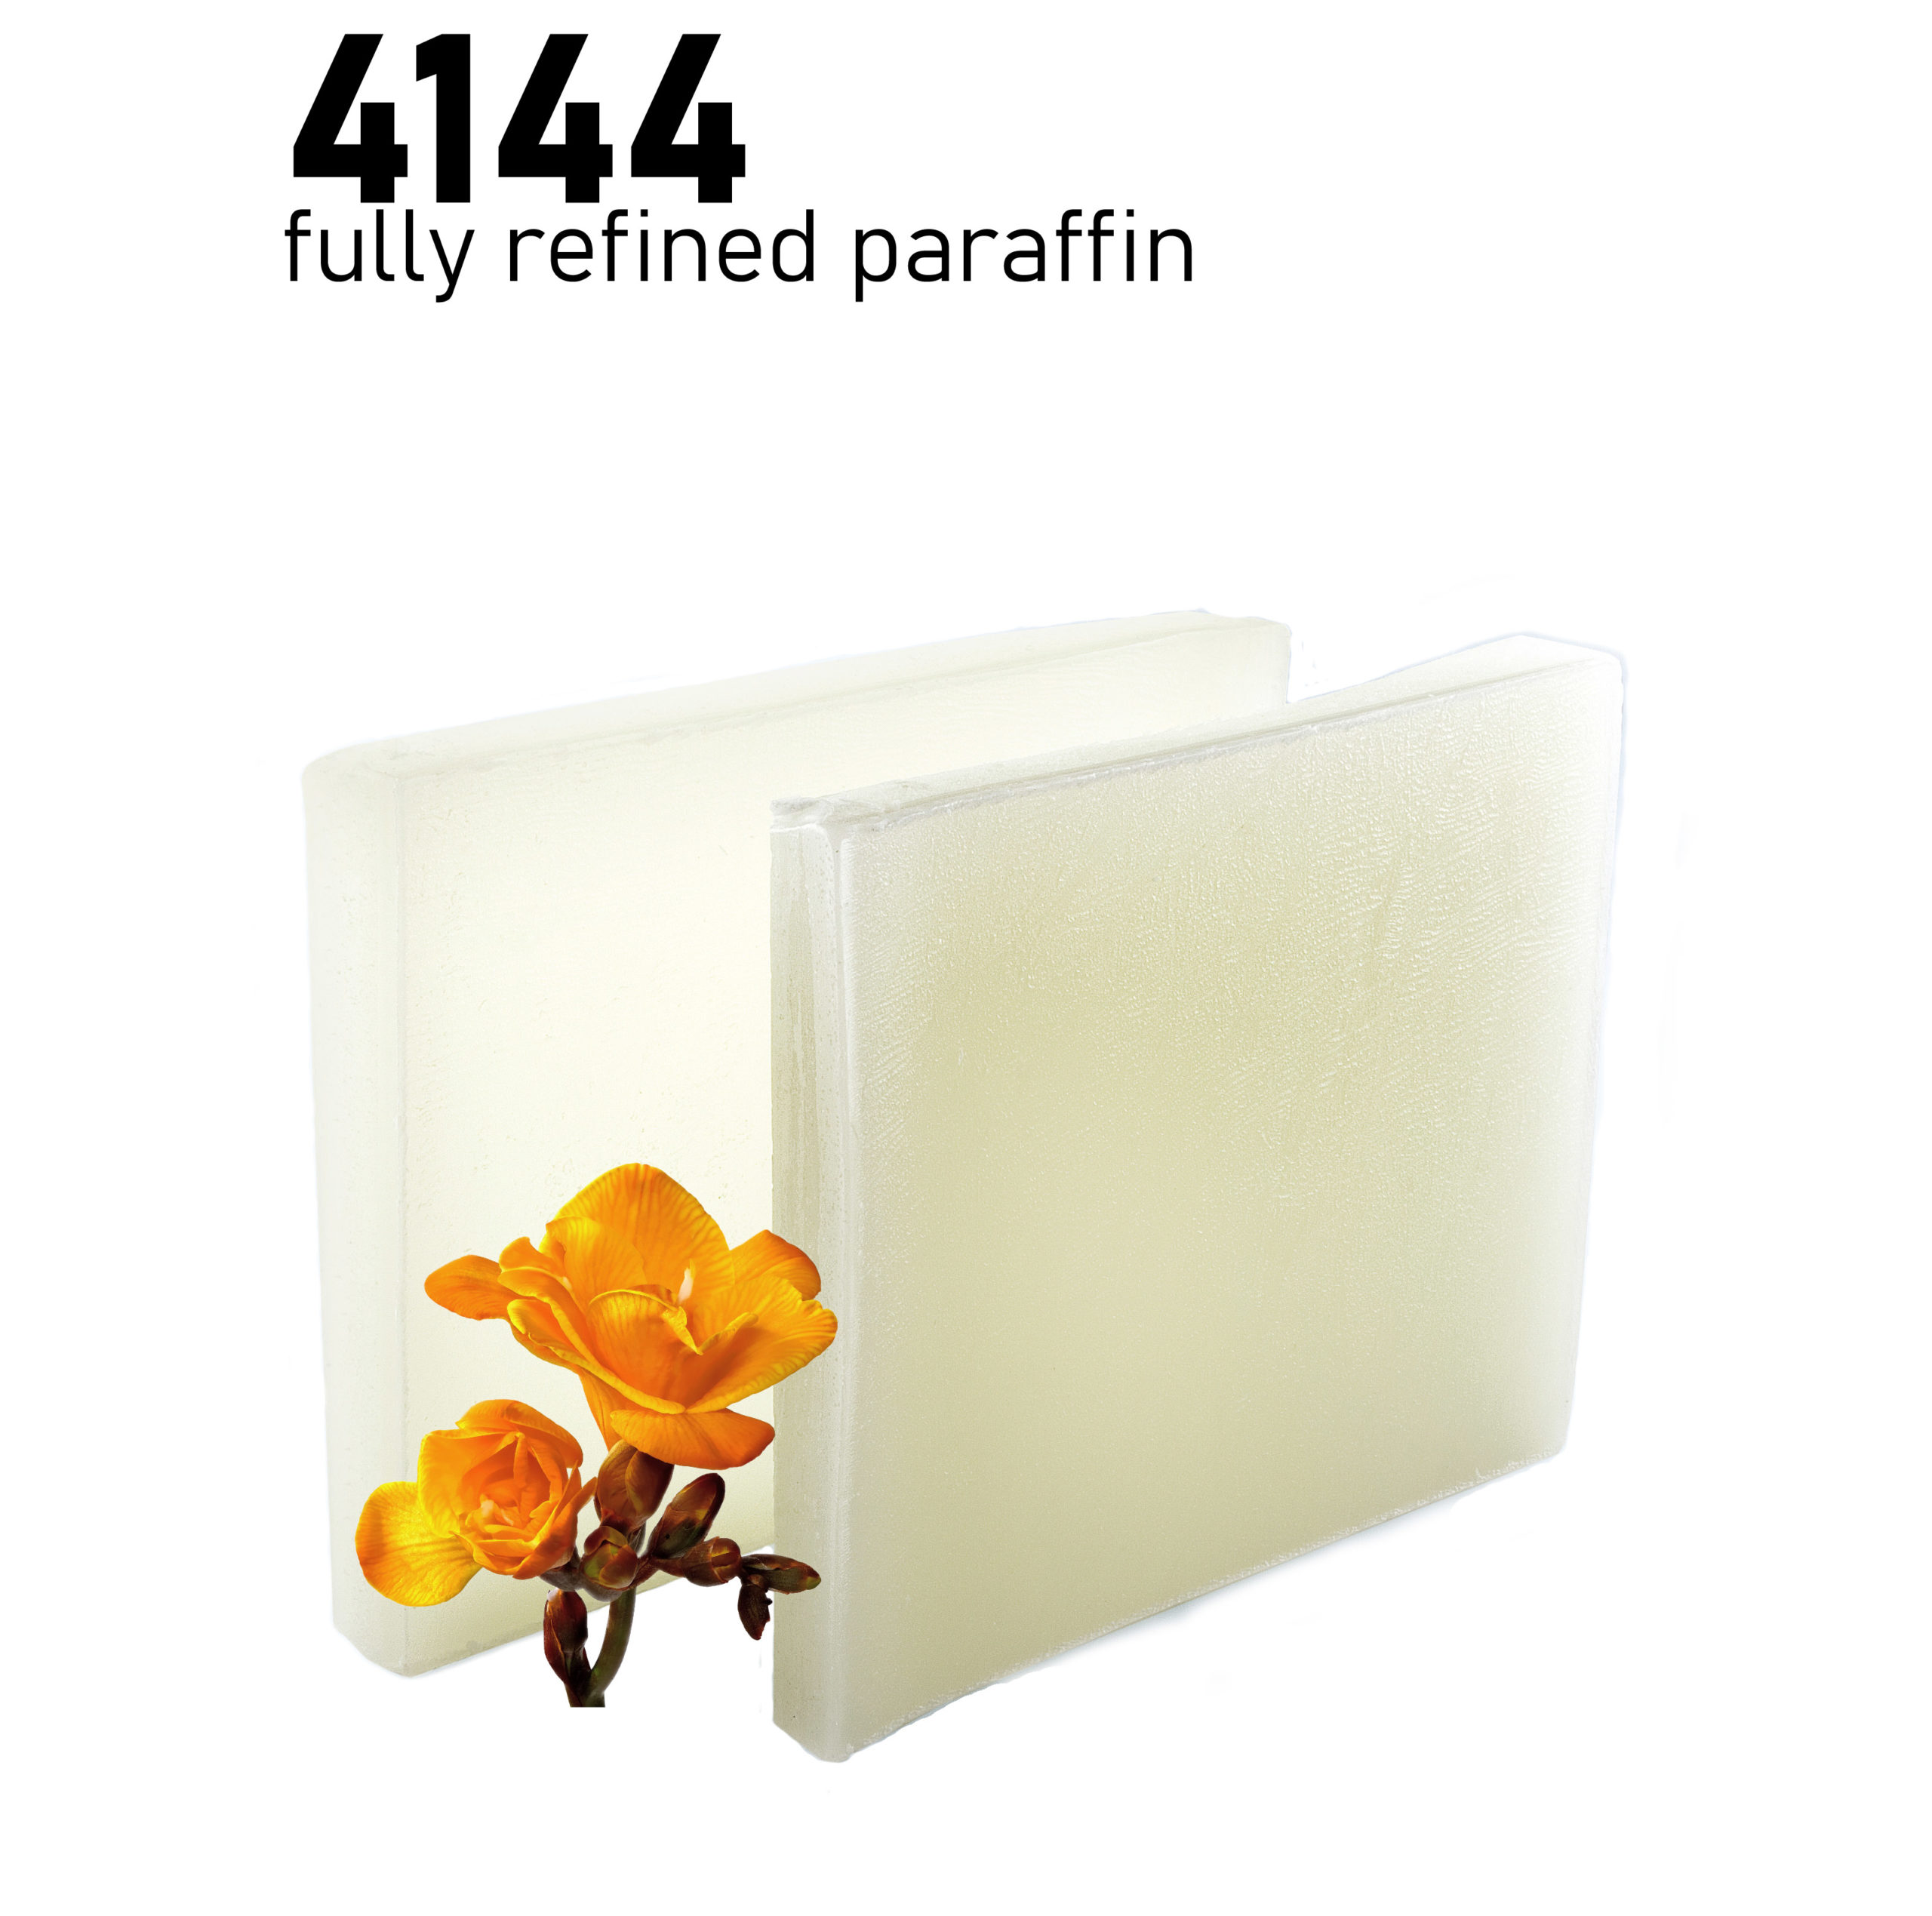 130 mp Paraffin Wax per 10 lb. slab